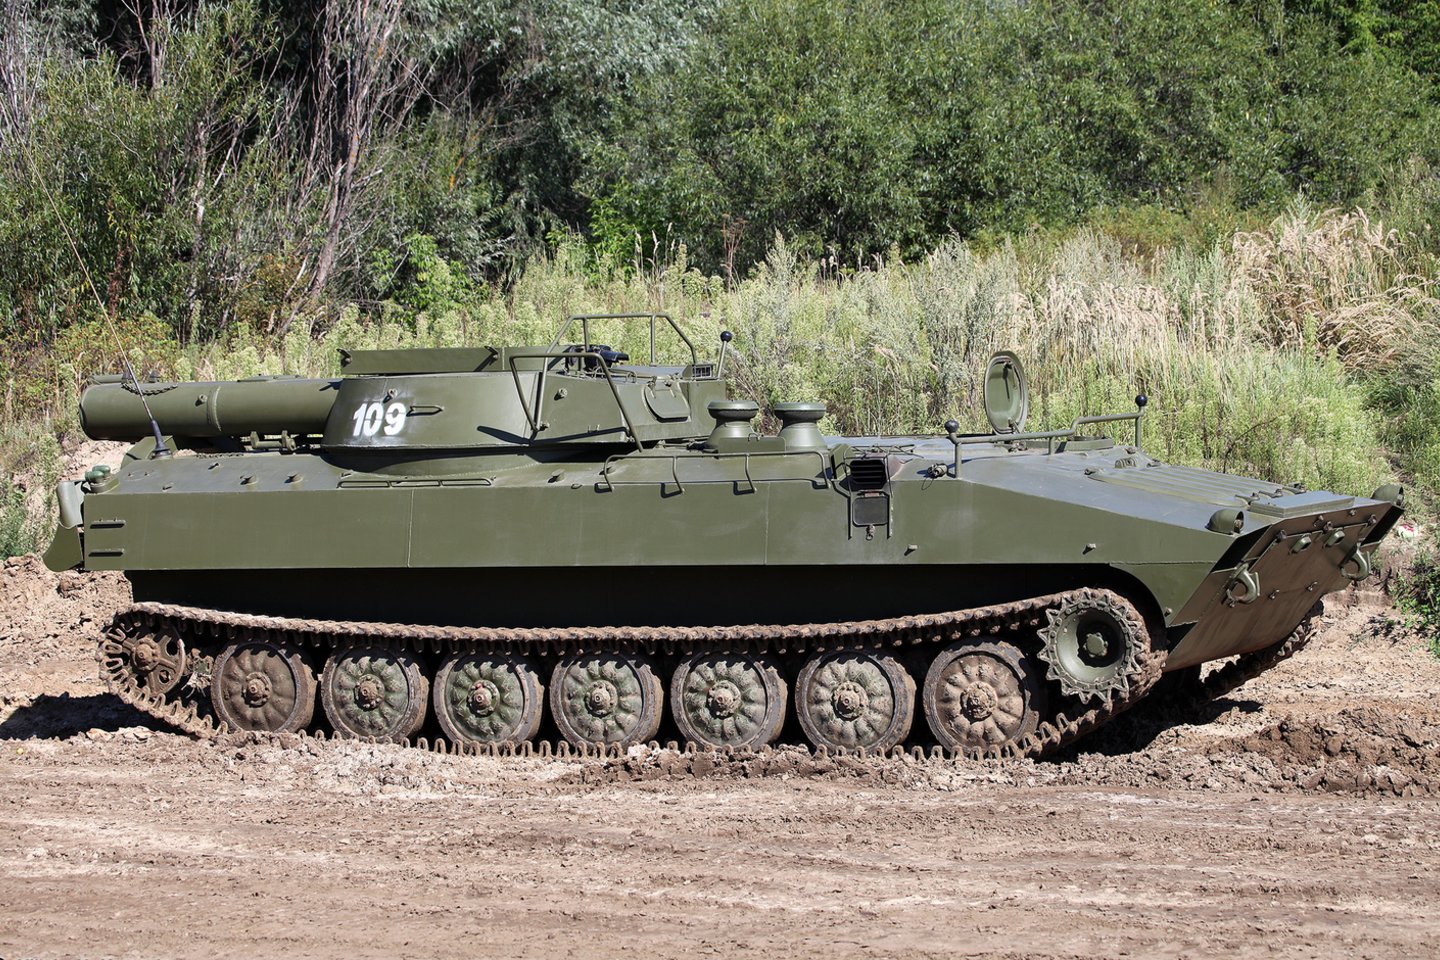  Ukrainos ginkluotųjų pajėgų 112-oji teritorinės gynybos brigada praneša, kad likvidavo minų šalinimo automobilį „UR-77 Meteorit“.<br> Wikimedia Commons.